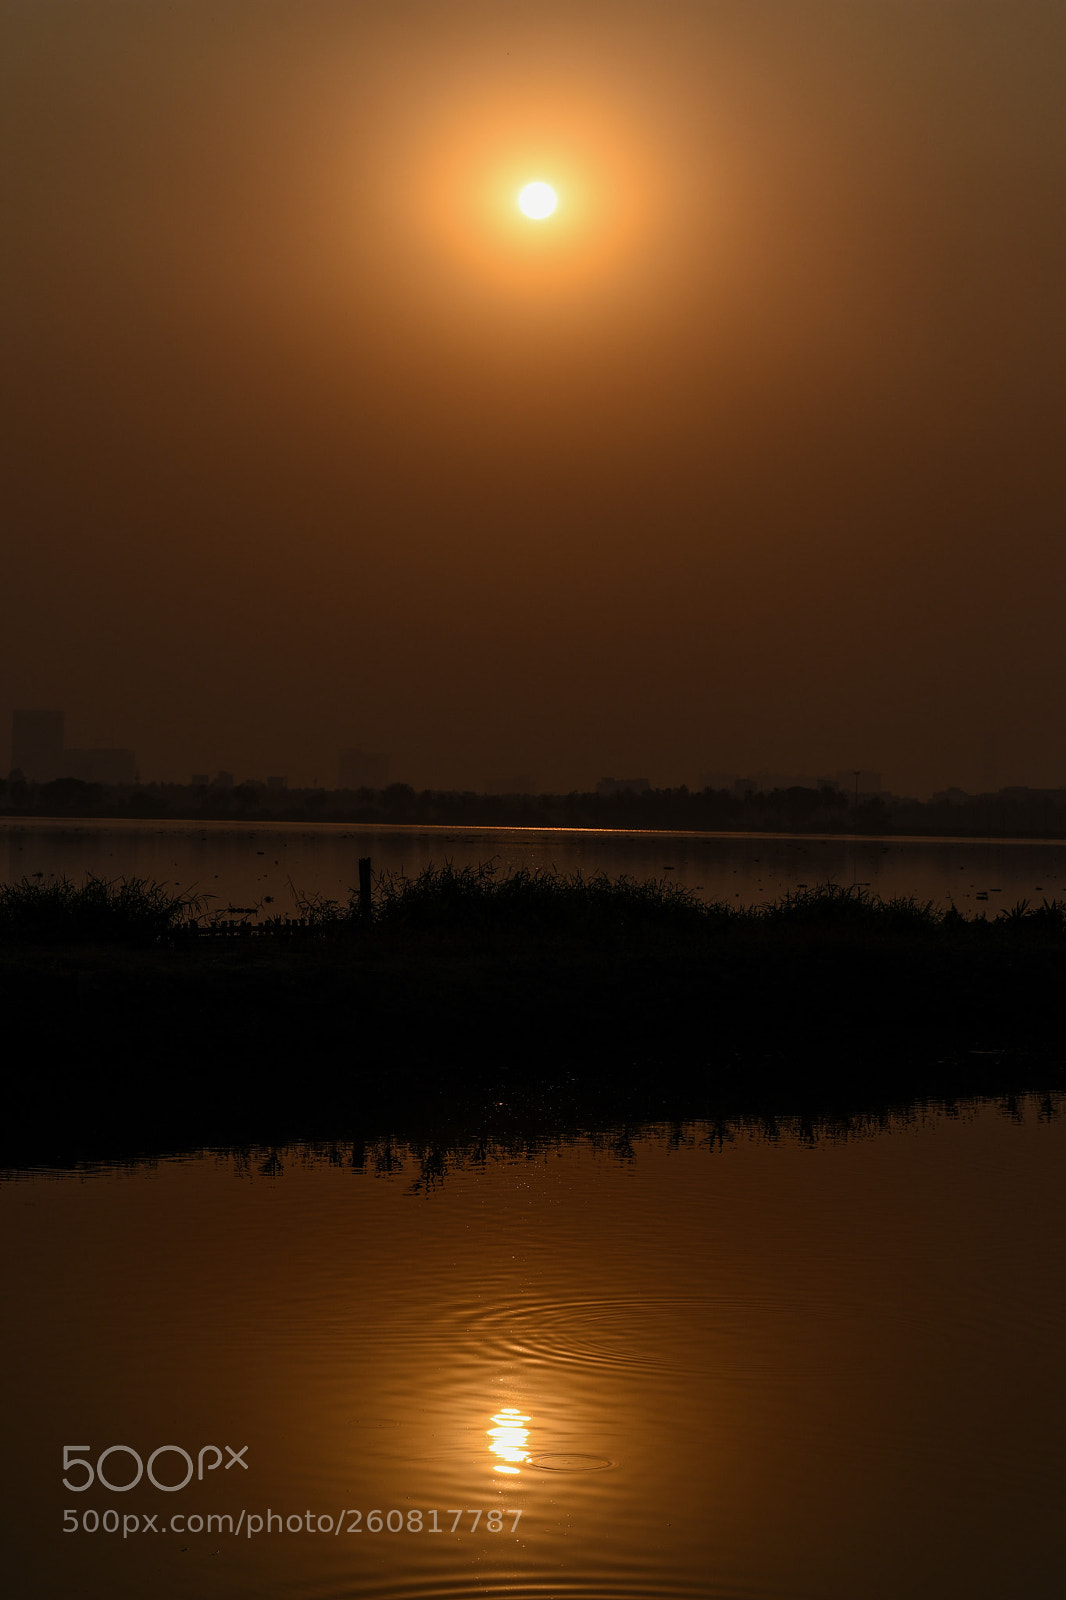 Nikon D3400 sample photo. A beautiful sunset photography